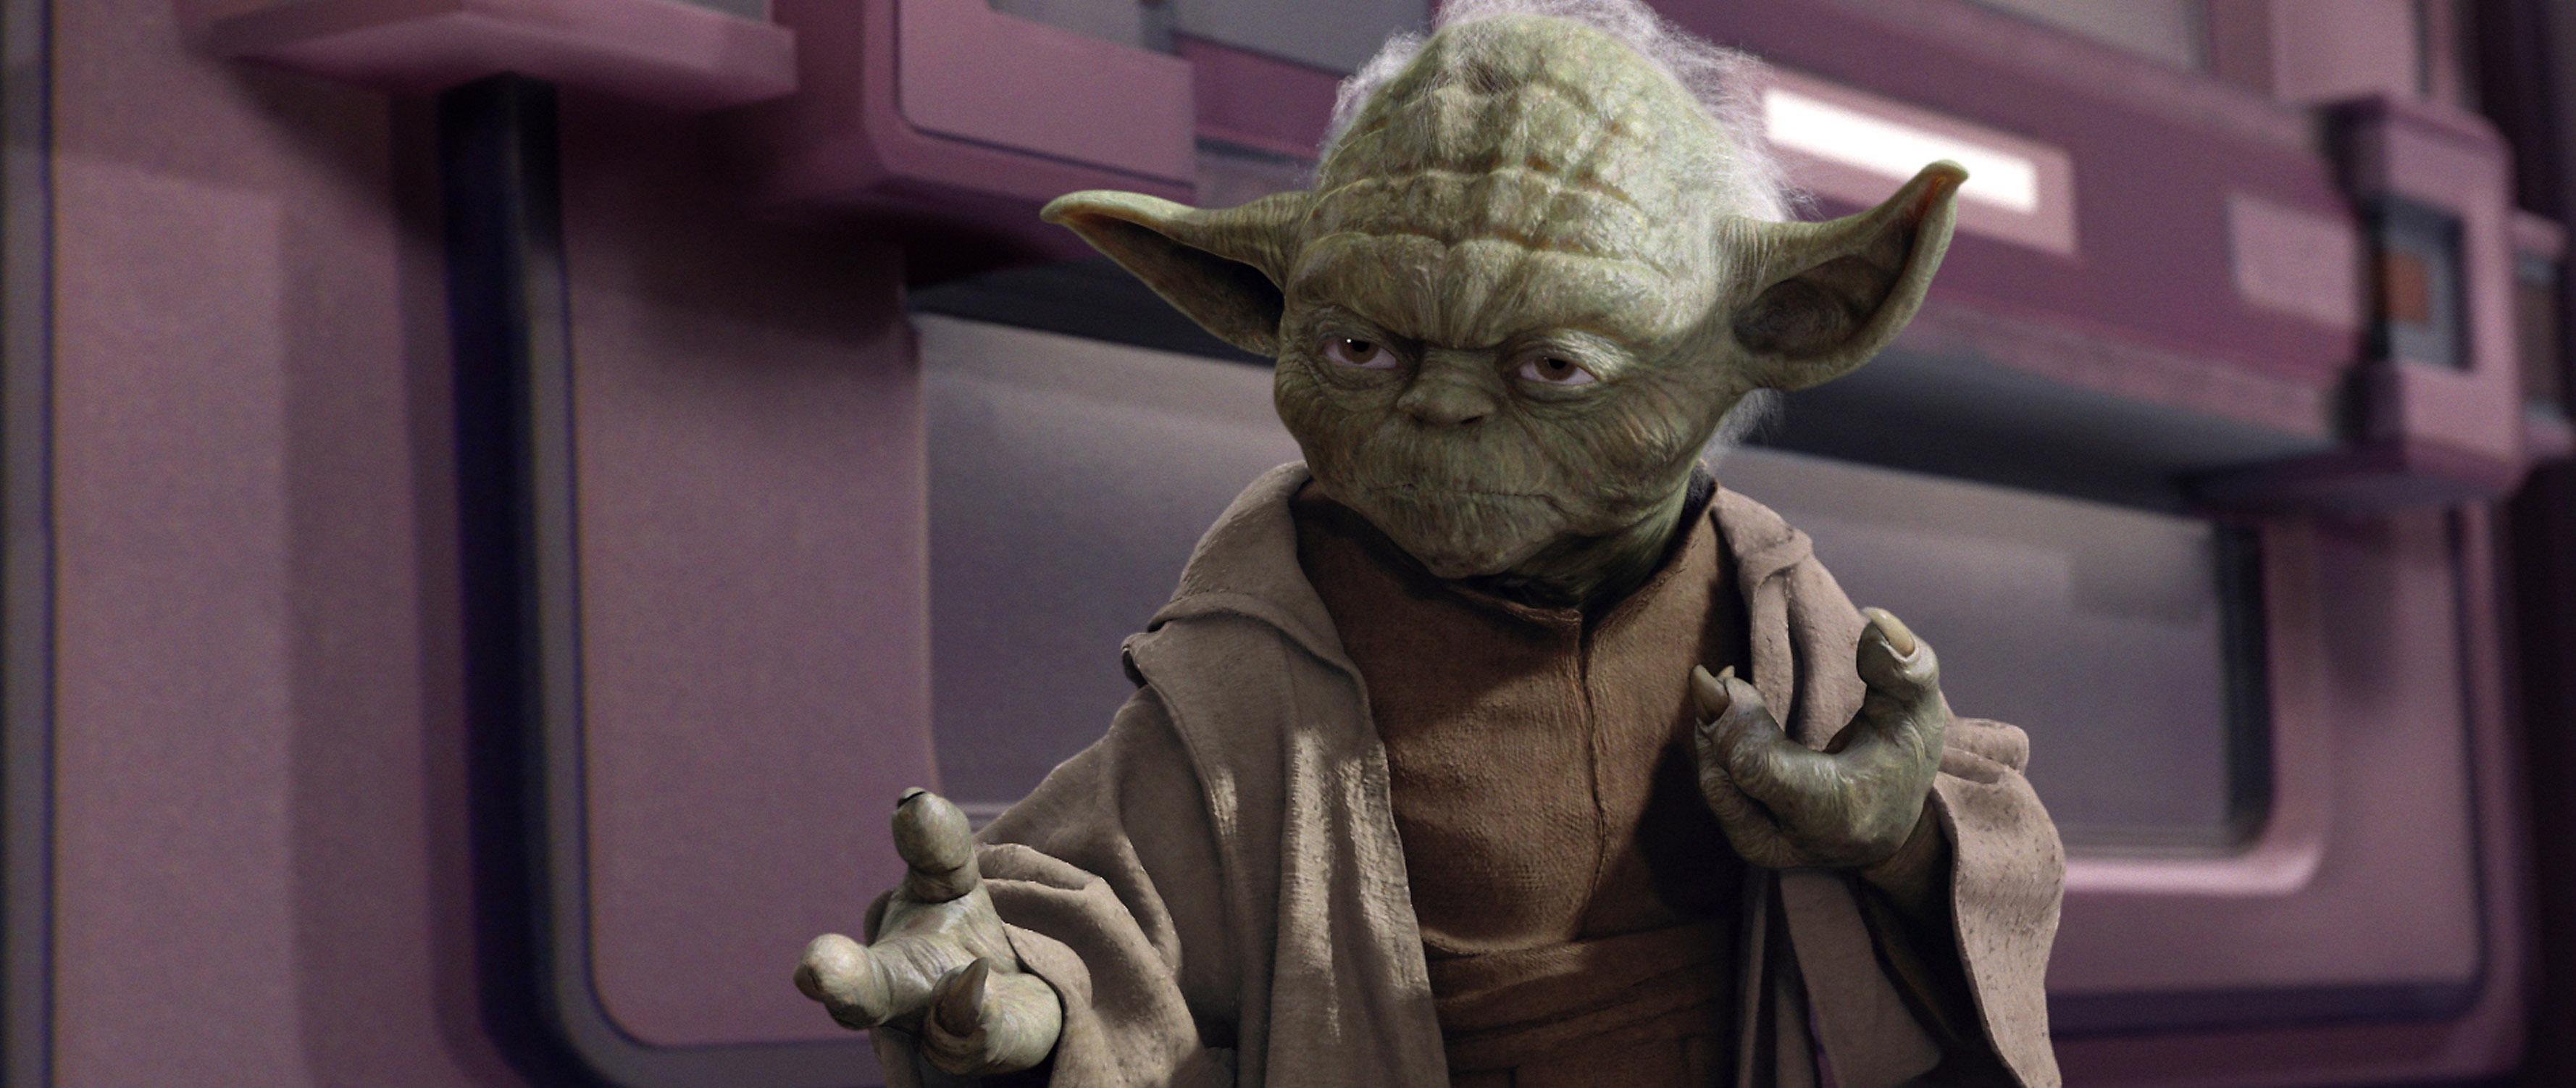 Yoda står med som avsändare från motreaktionerna till hatbreven mot spelföretaget EA. 